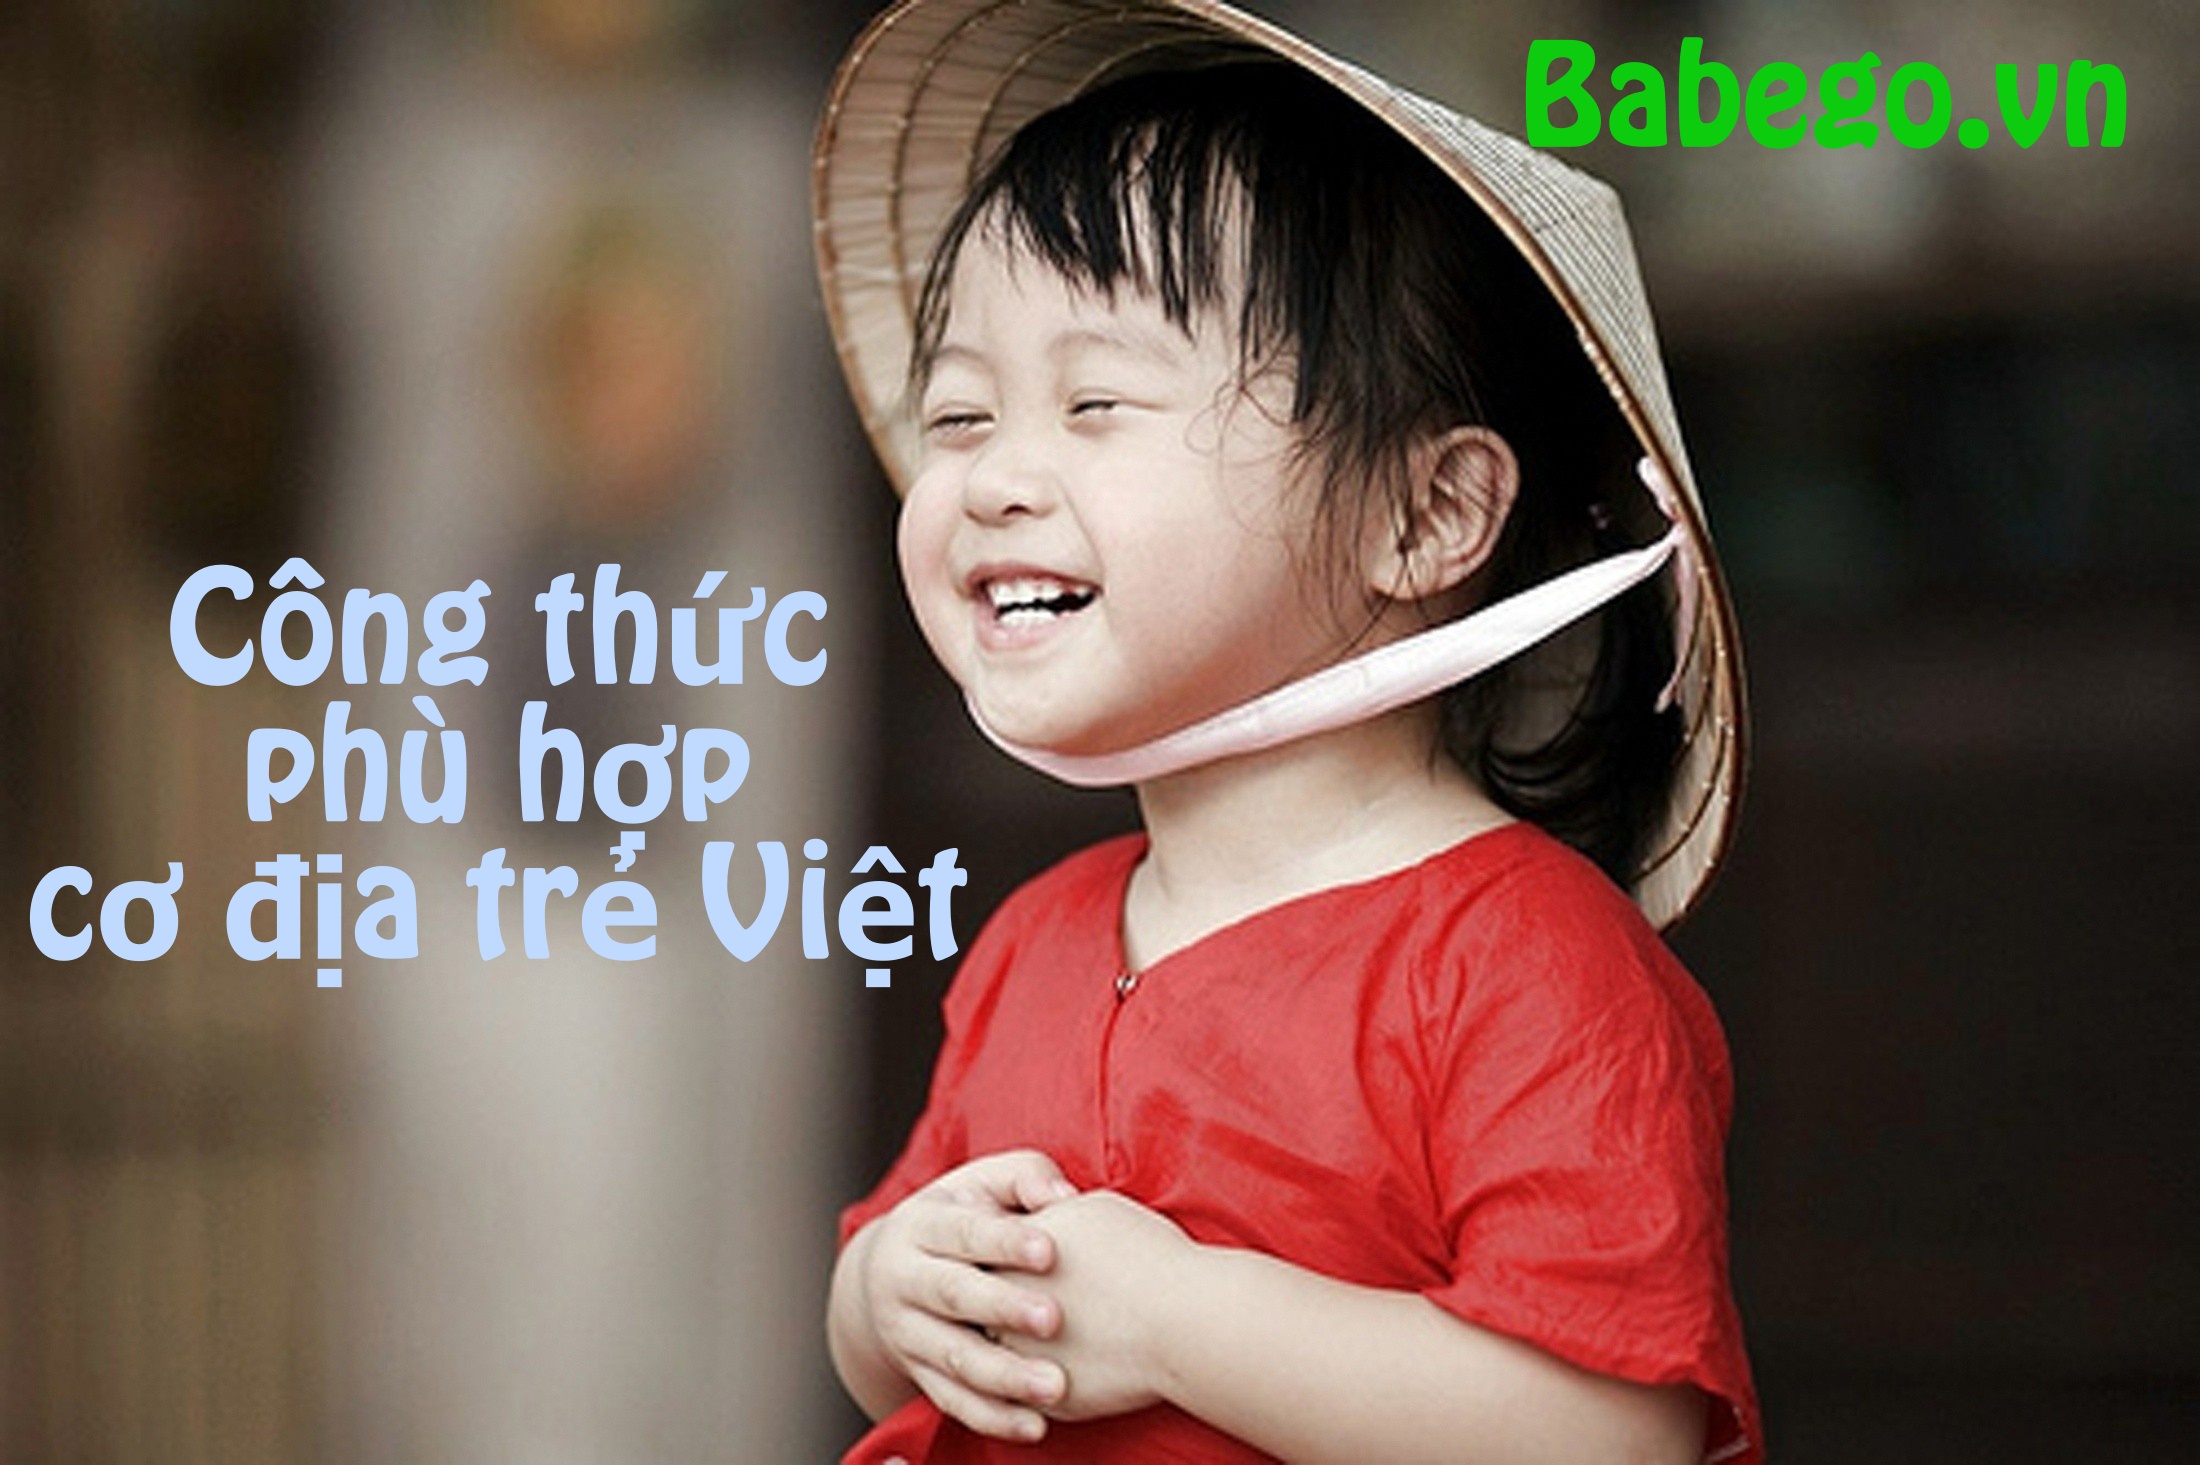 Sữa bột tăng cân Babago phù hợp cơ địa trẻ Việt Nam